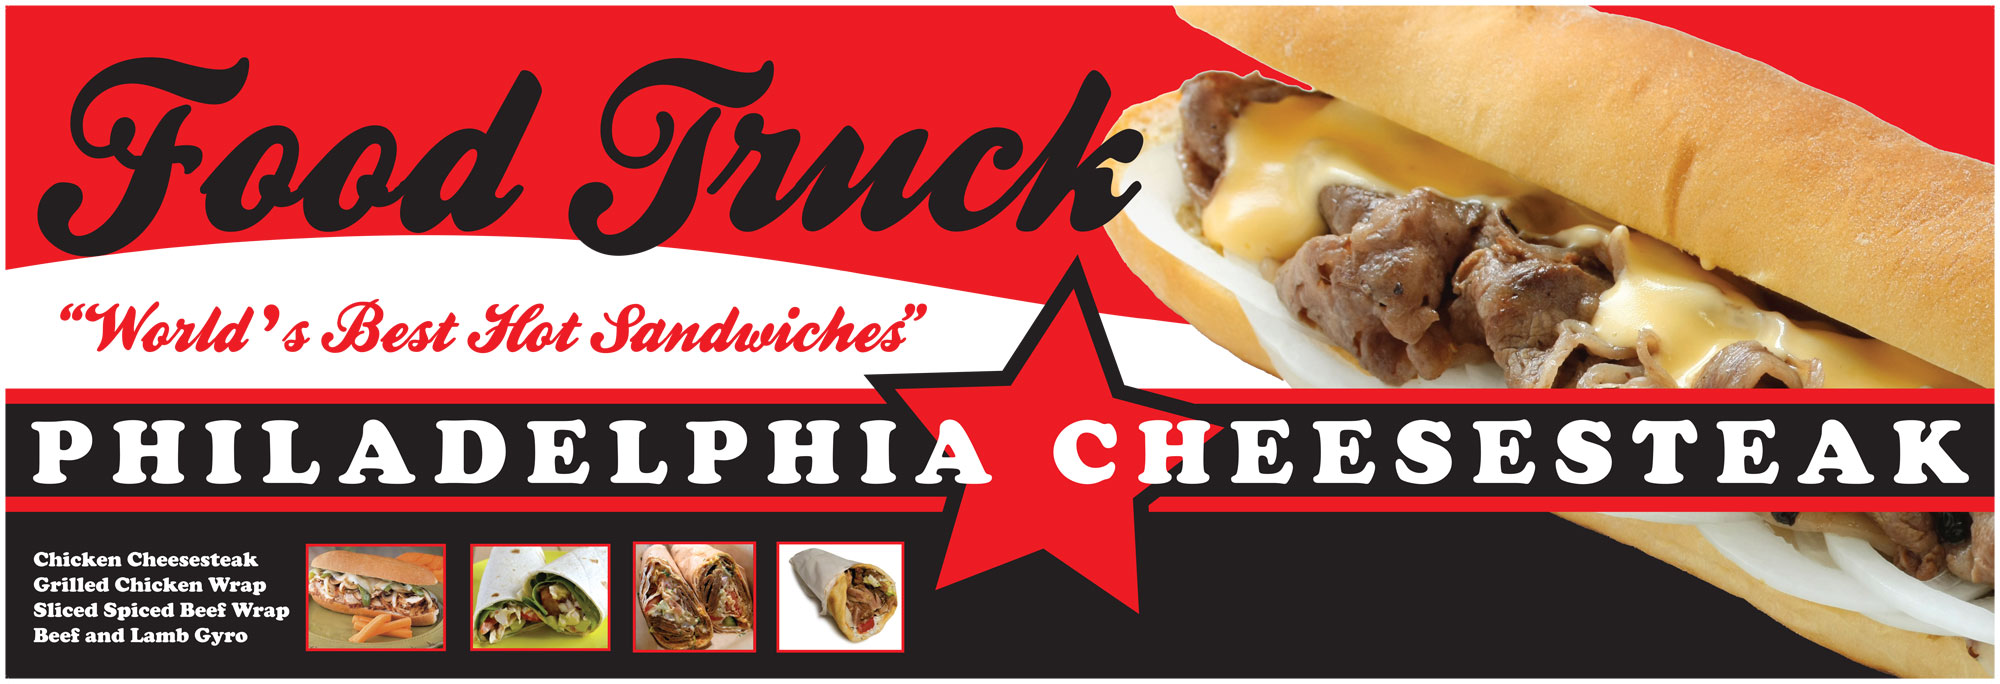 New Banner Design for Kansas City Food Truck